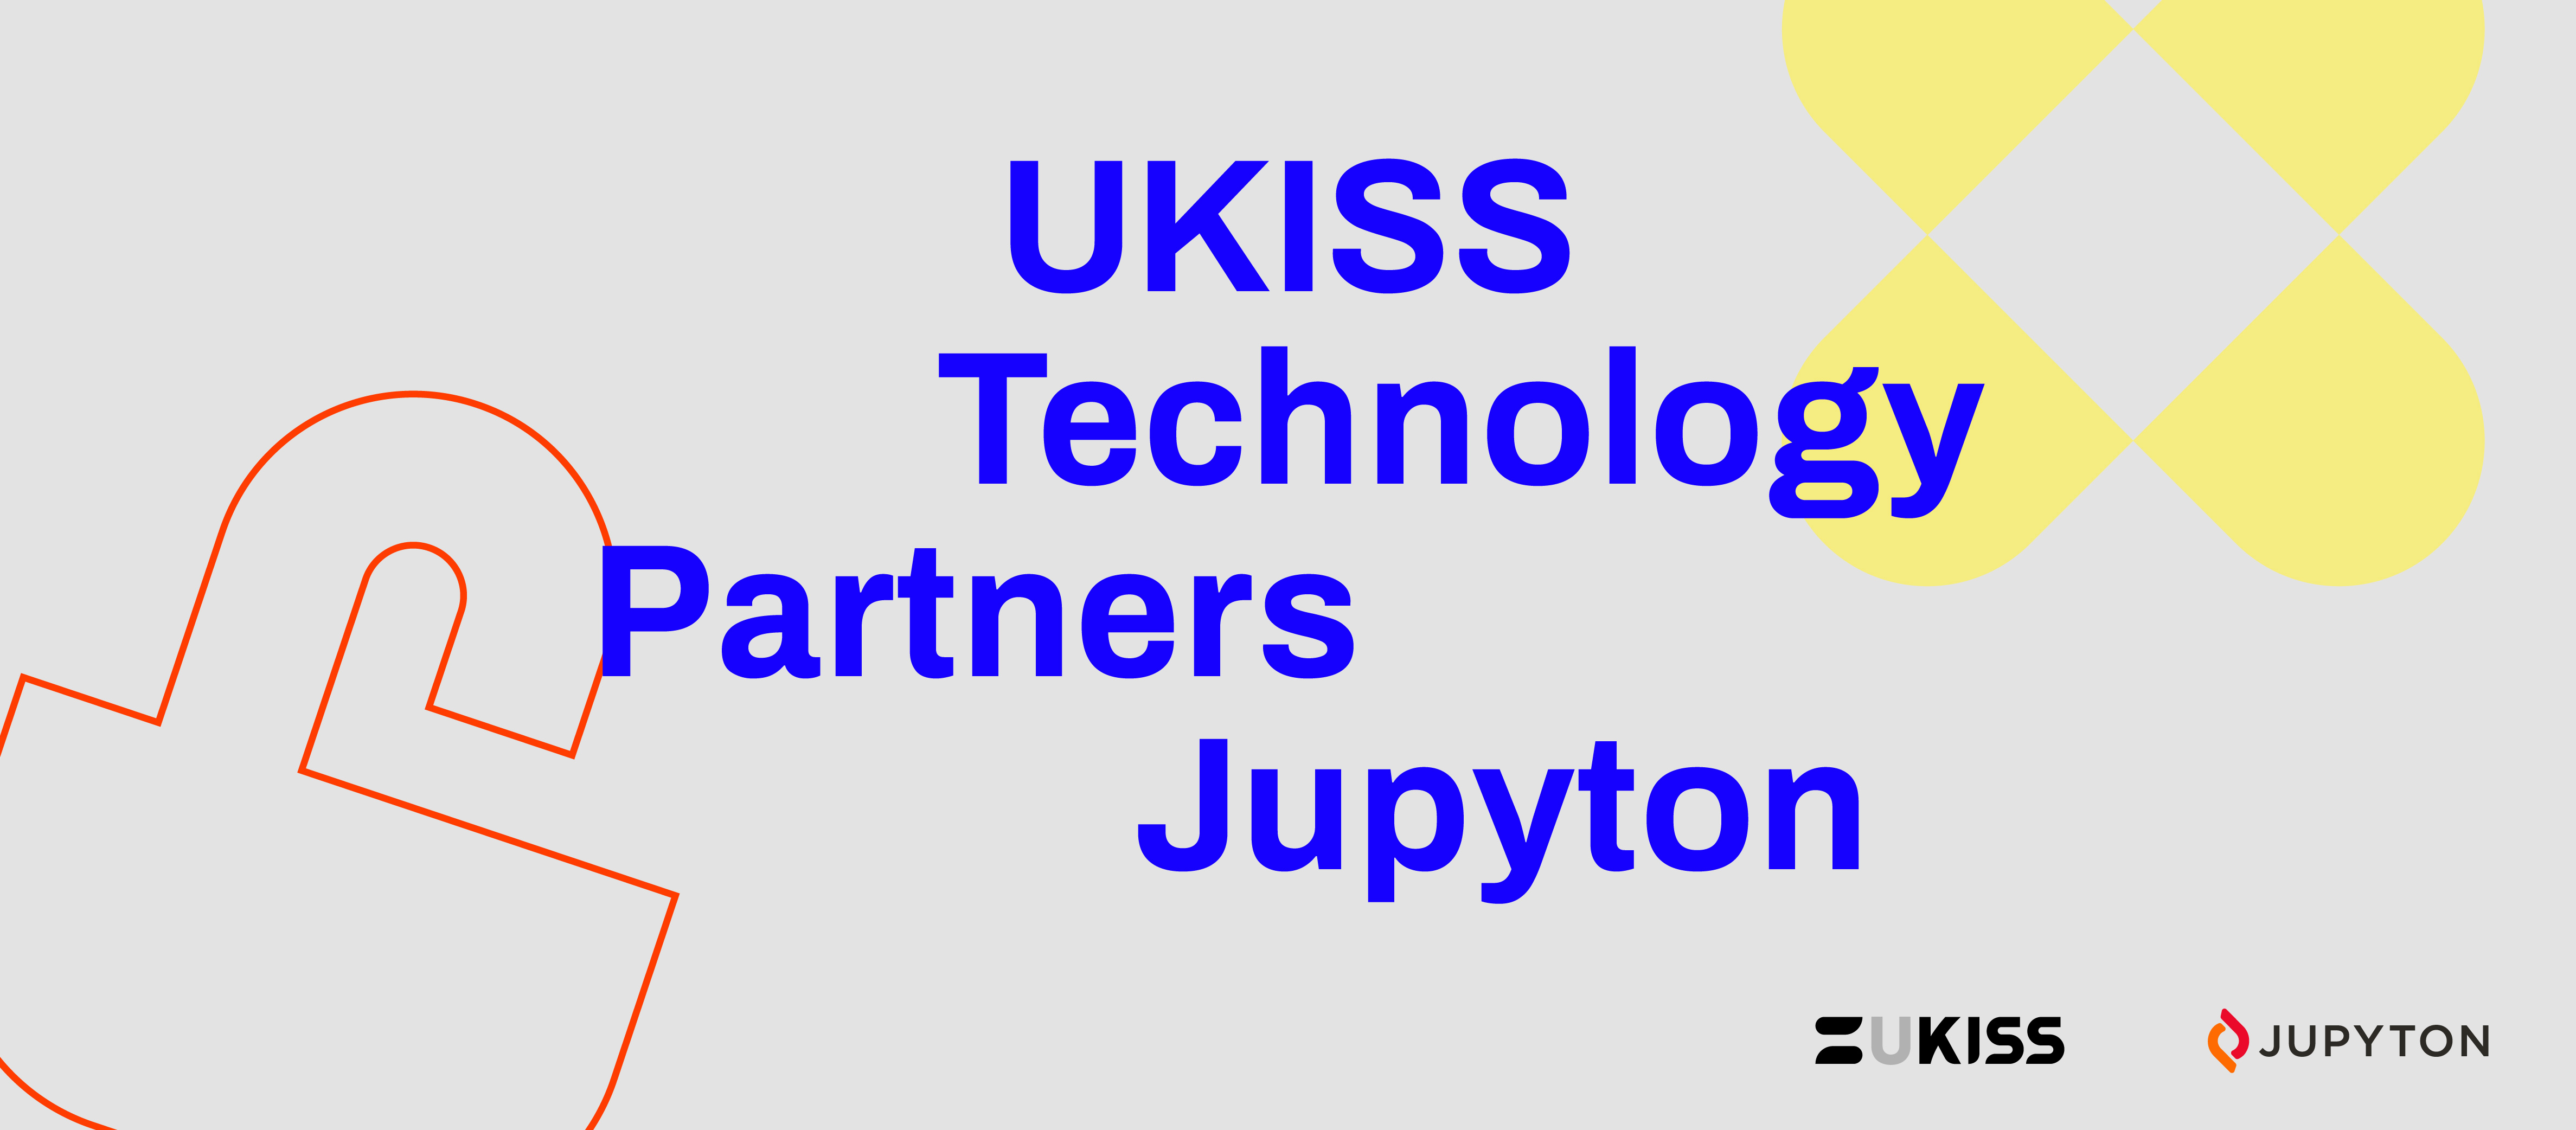 UKISS Technology partners Jupyton